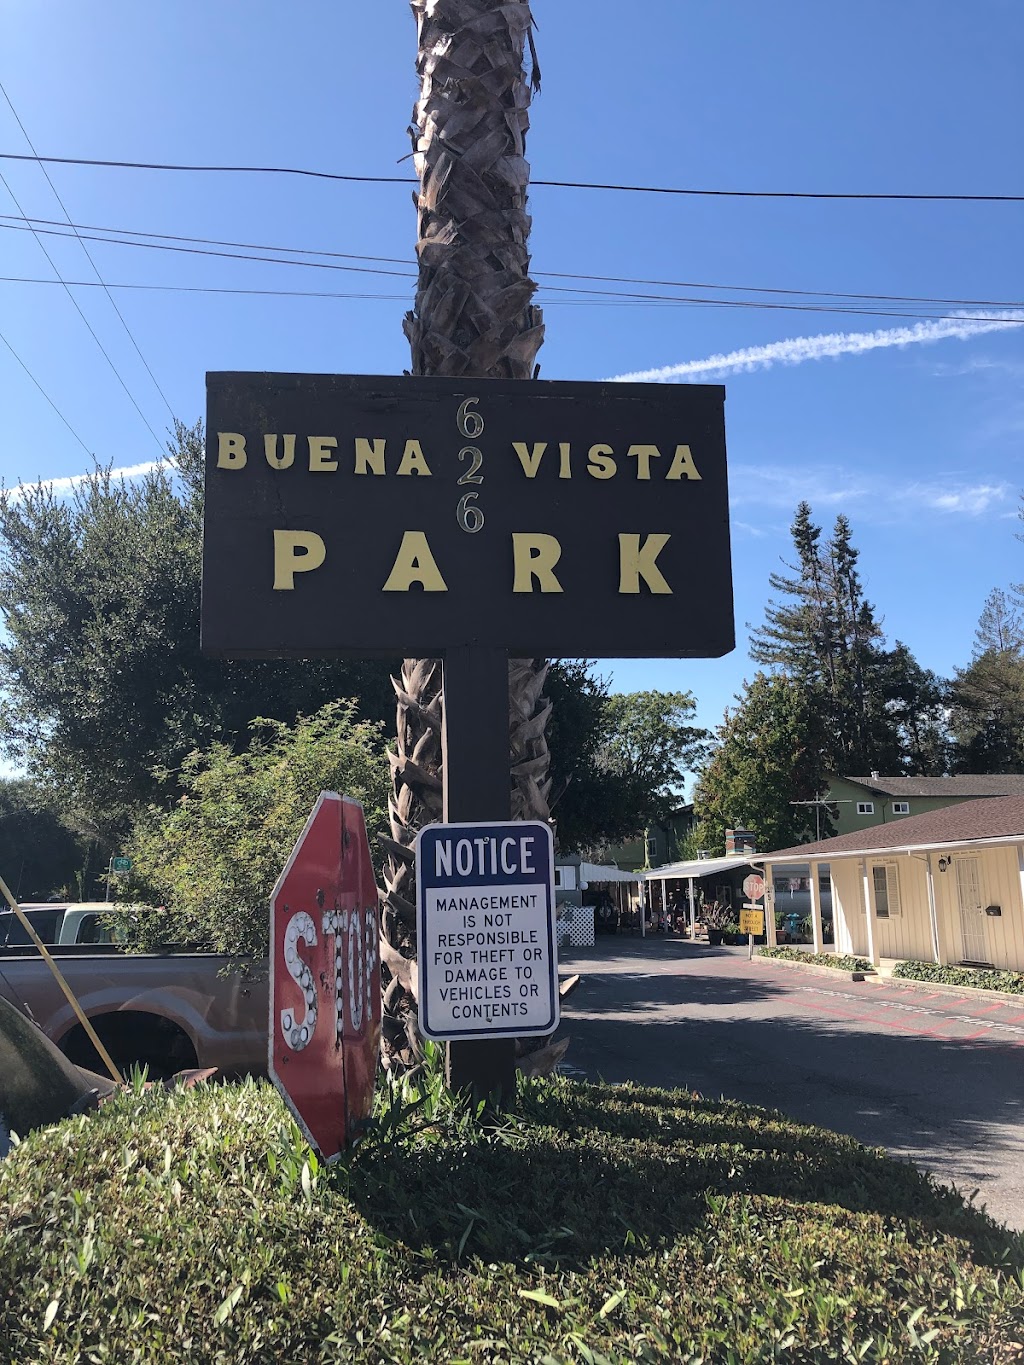 Buena Vista Mobile Home Park | 3980 El Camino Real, Palo Alto, CA 94306 | Phone: (650) 561-4787